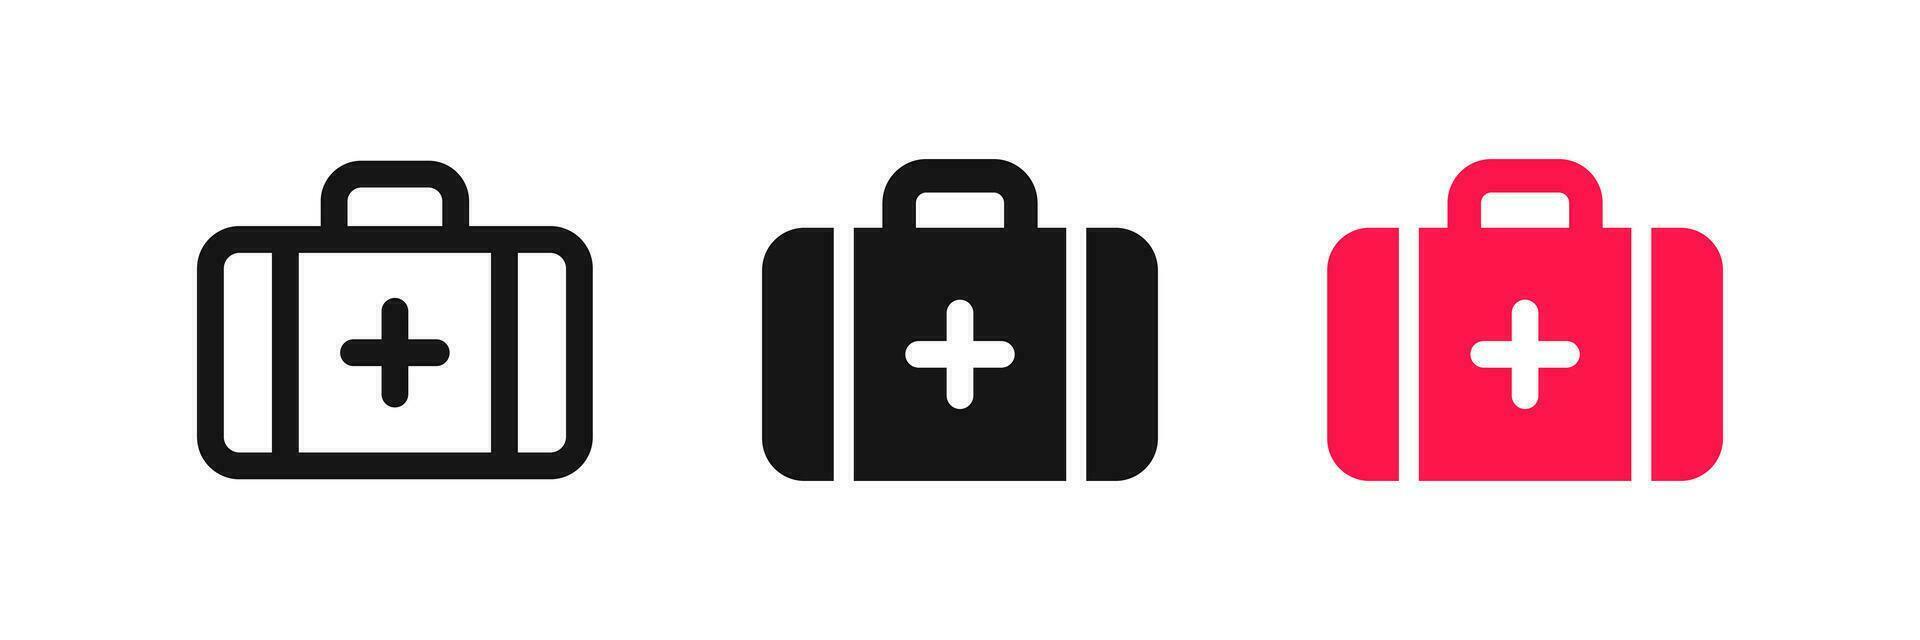 medisch koffer symbool. eerste steun tekens. uitrusting geval noodgeval zorg symbolen. apotheek pictogrammen. zwart, rood kleur. vector teken.